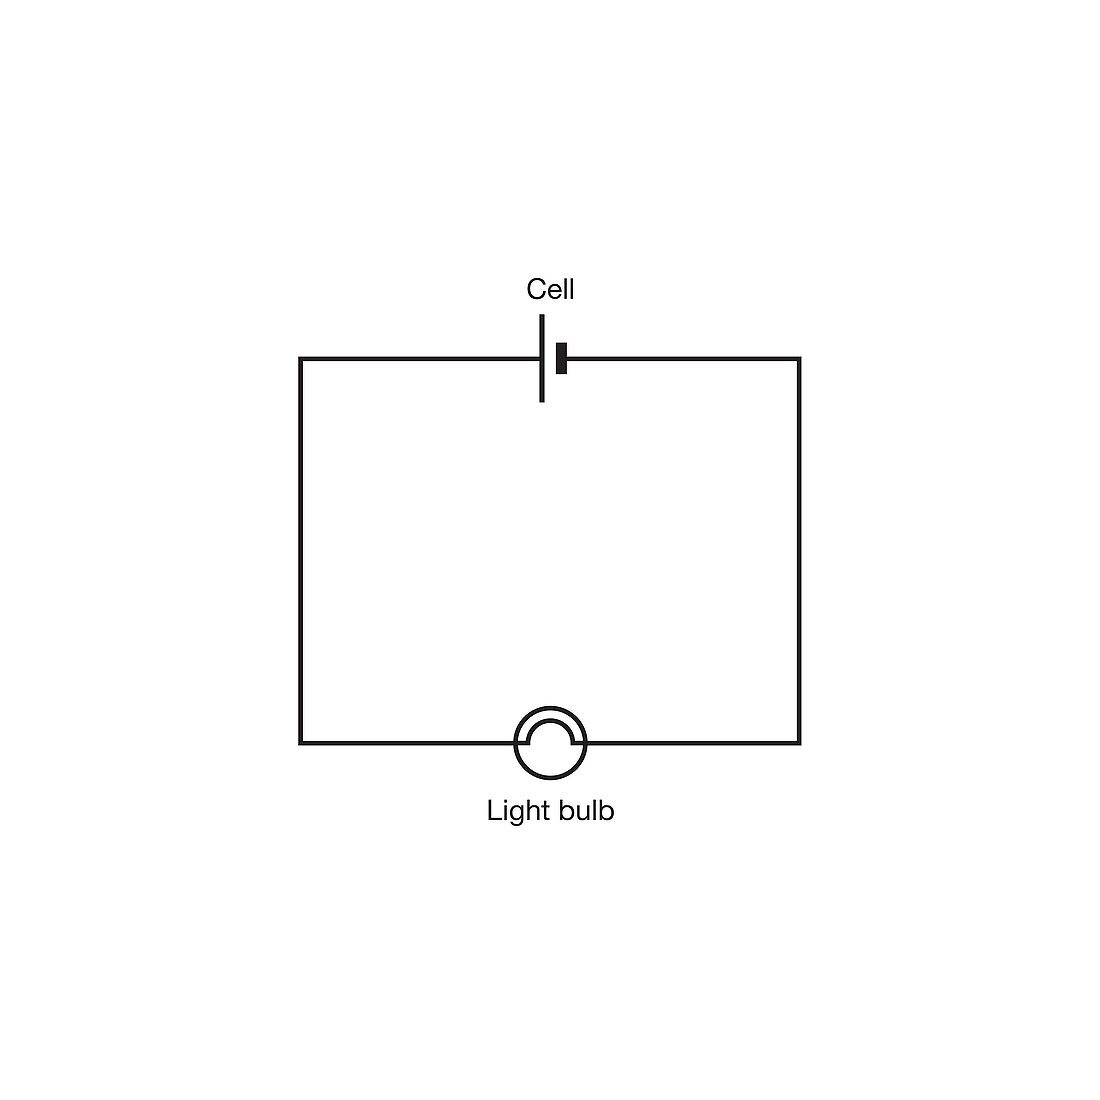 Simple lighting circuit, illustration